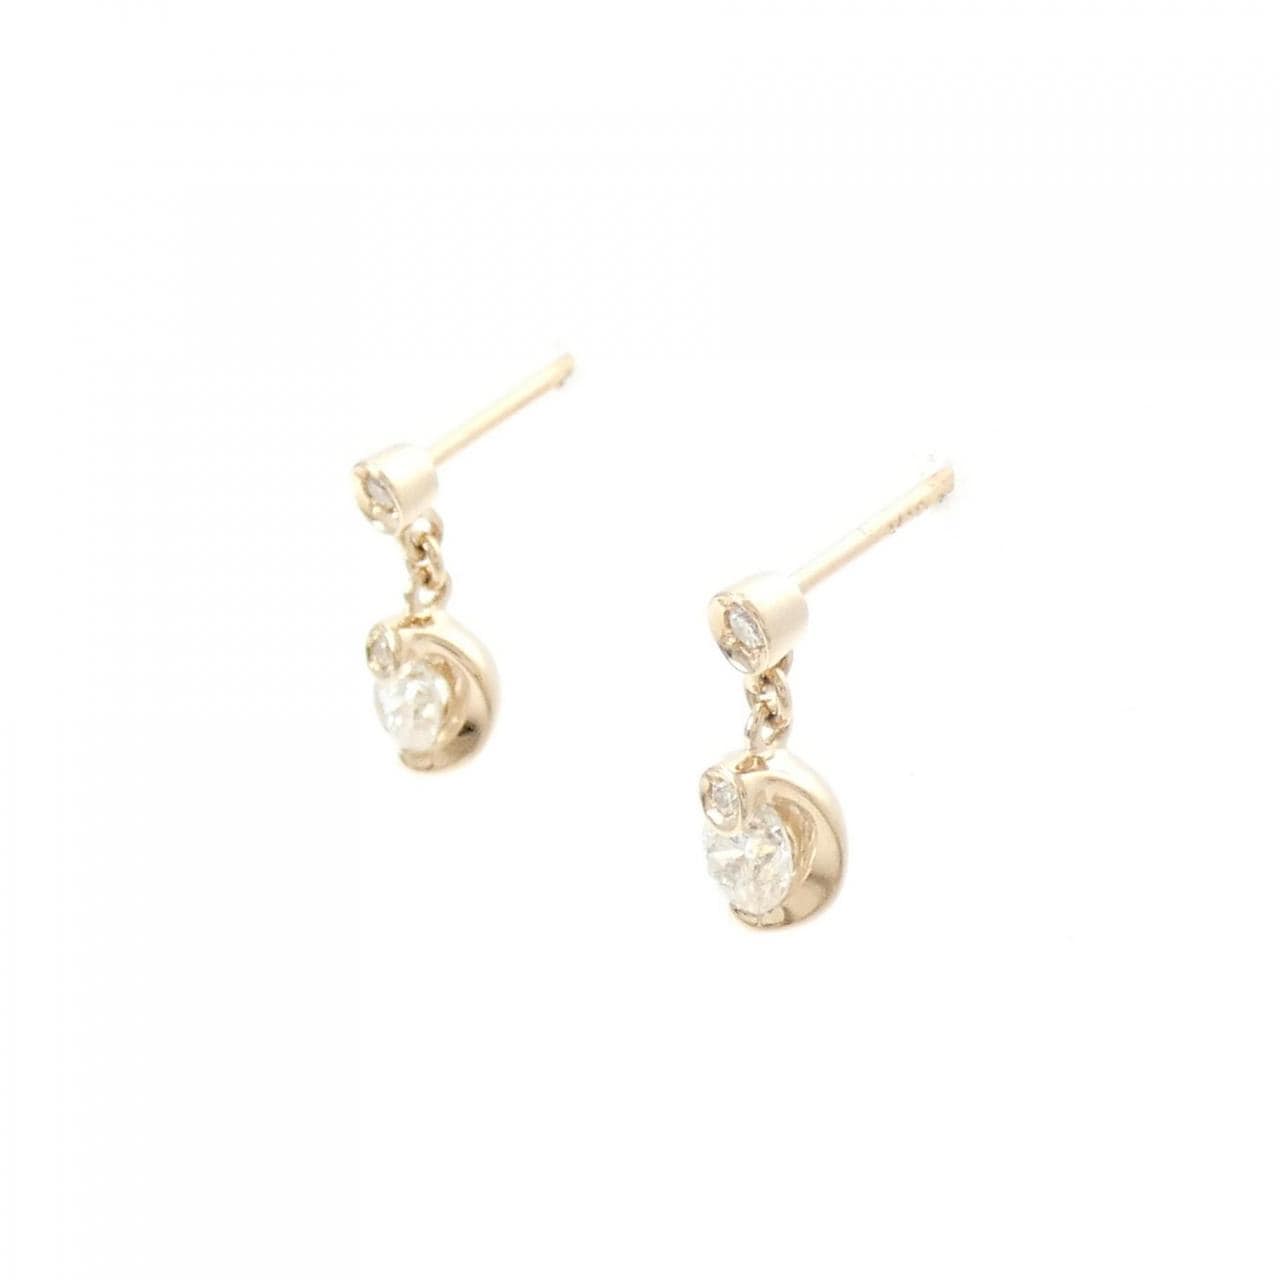 K18PG Diamond earrings 0.226CT